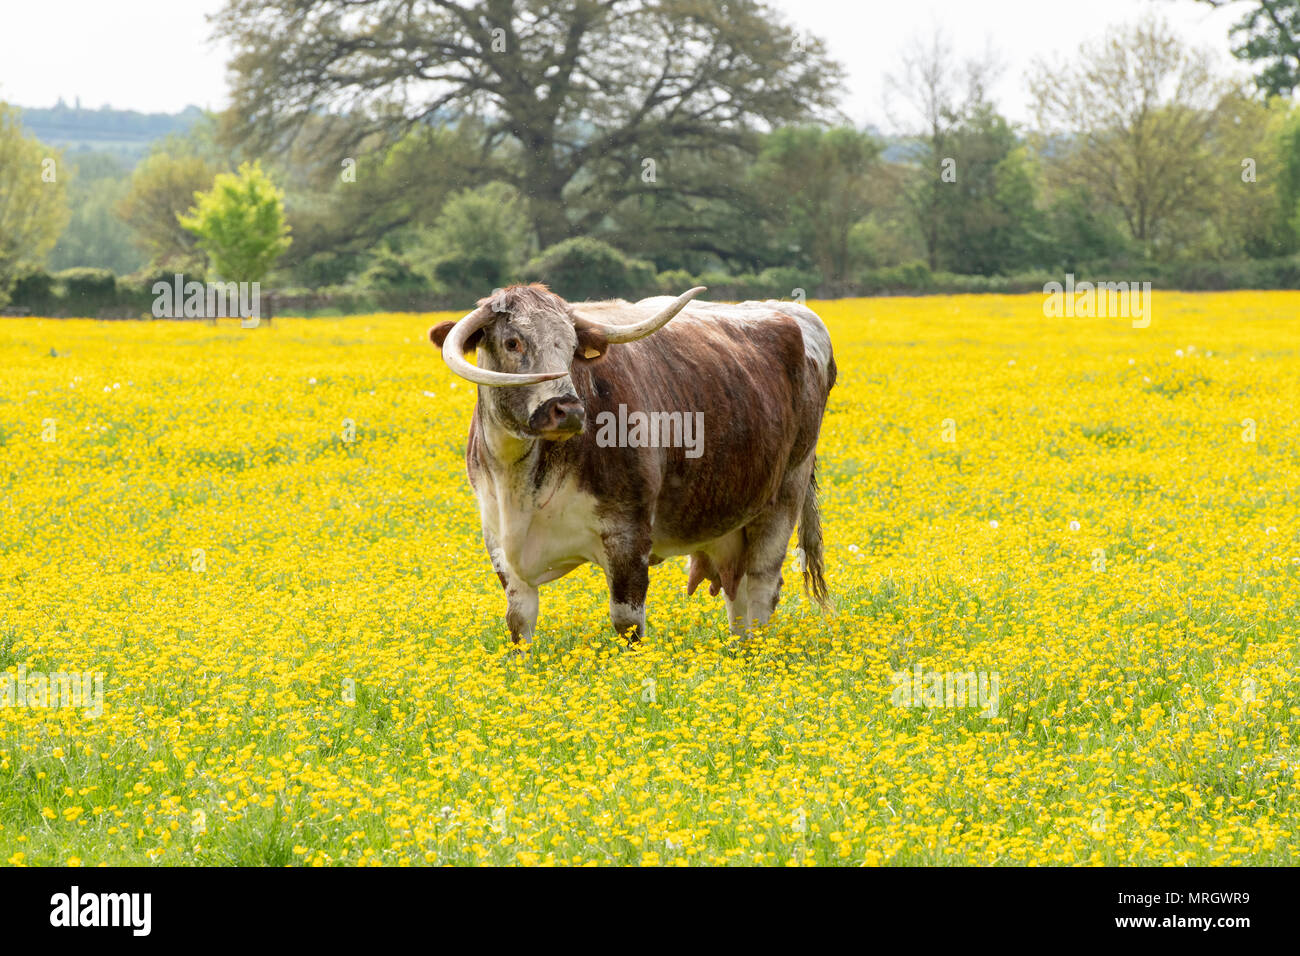 Bos primigenius. English longhorn vache dans un champ de renoncules dans la campagne anglaise. L'Oxfordshire, UK Banque D'Images